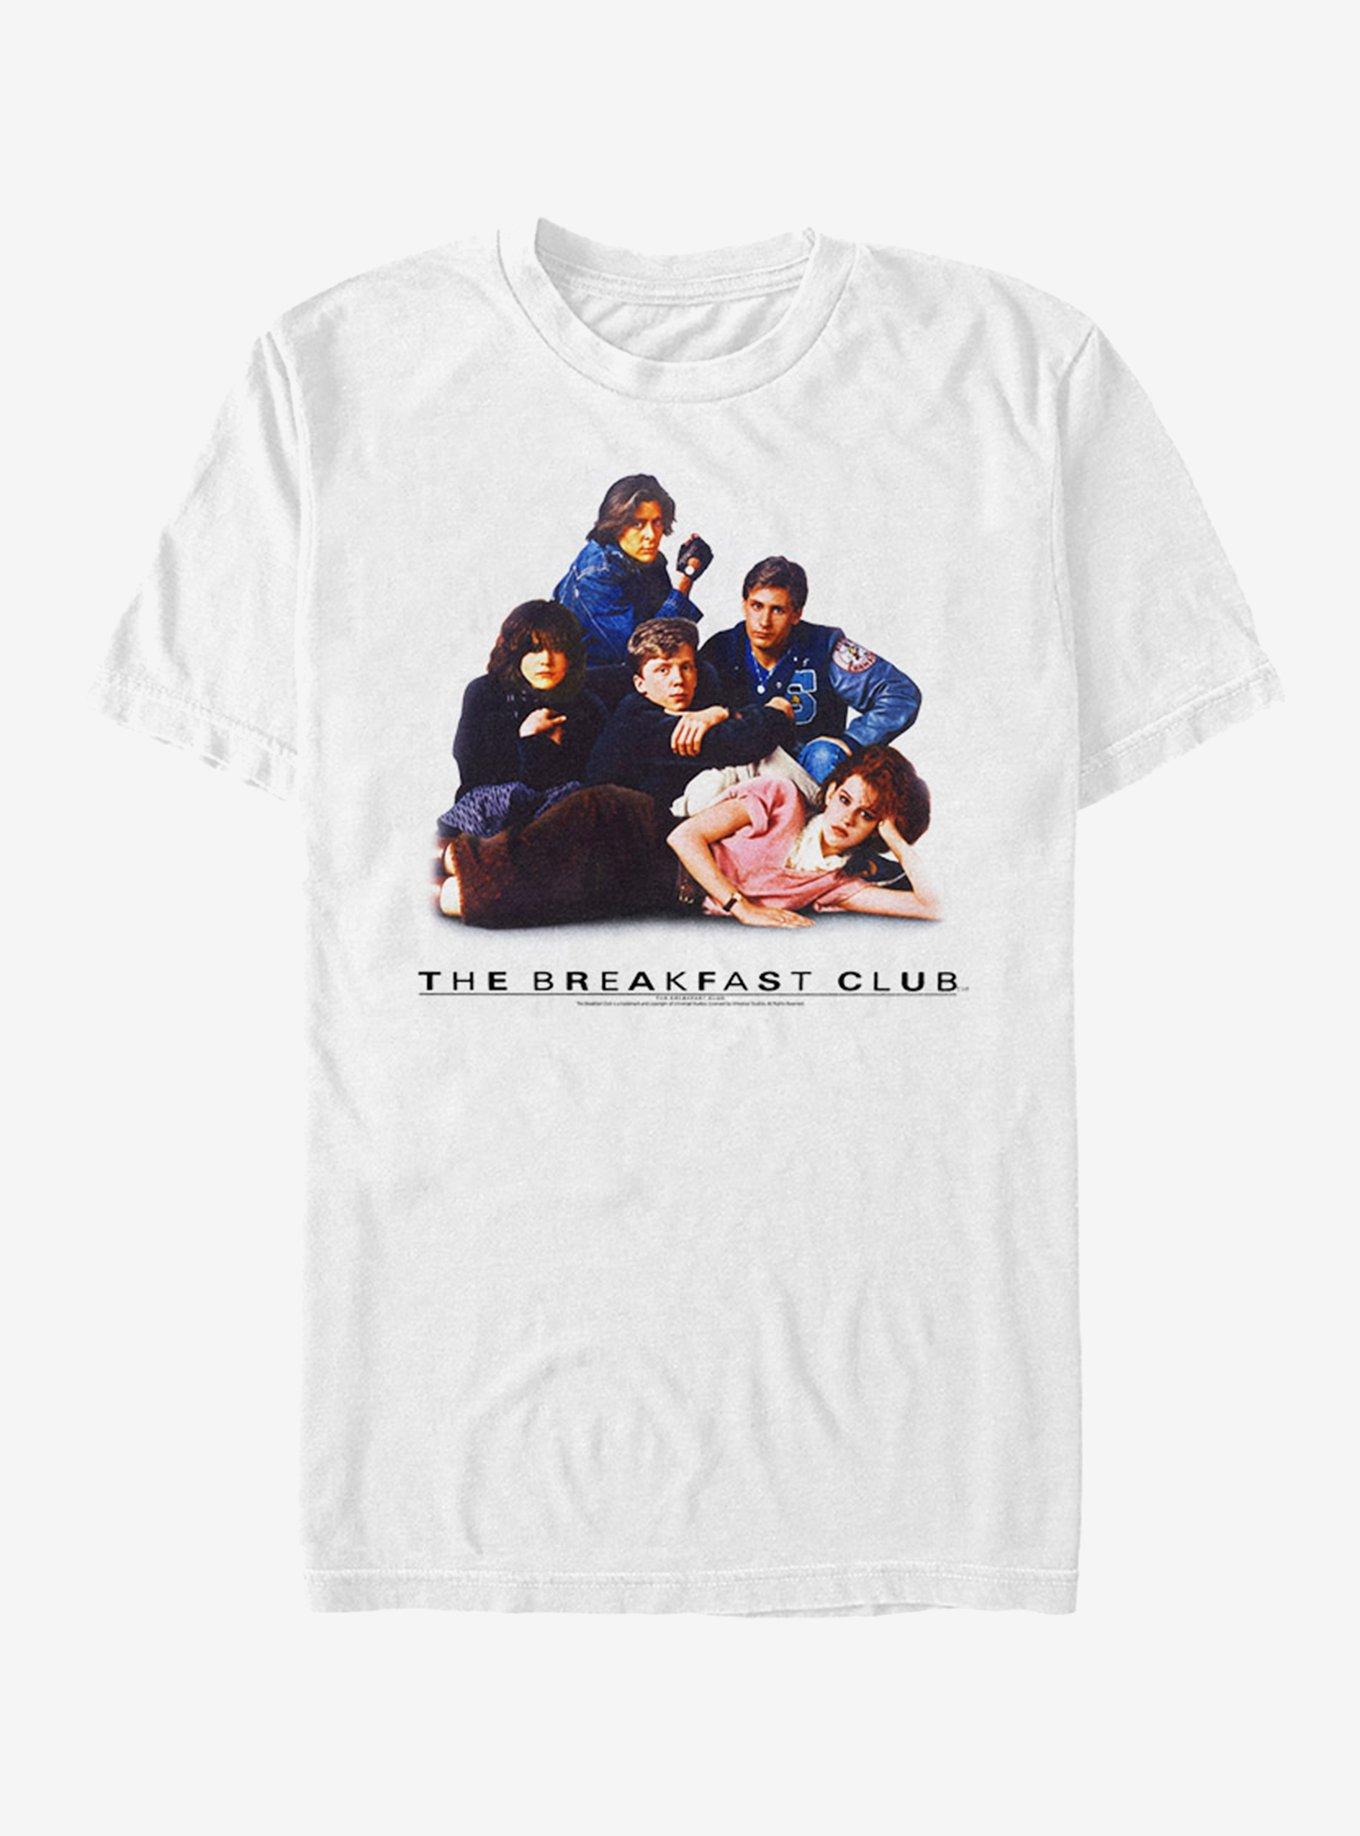 Breakfast Club Poster T-Shirt